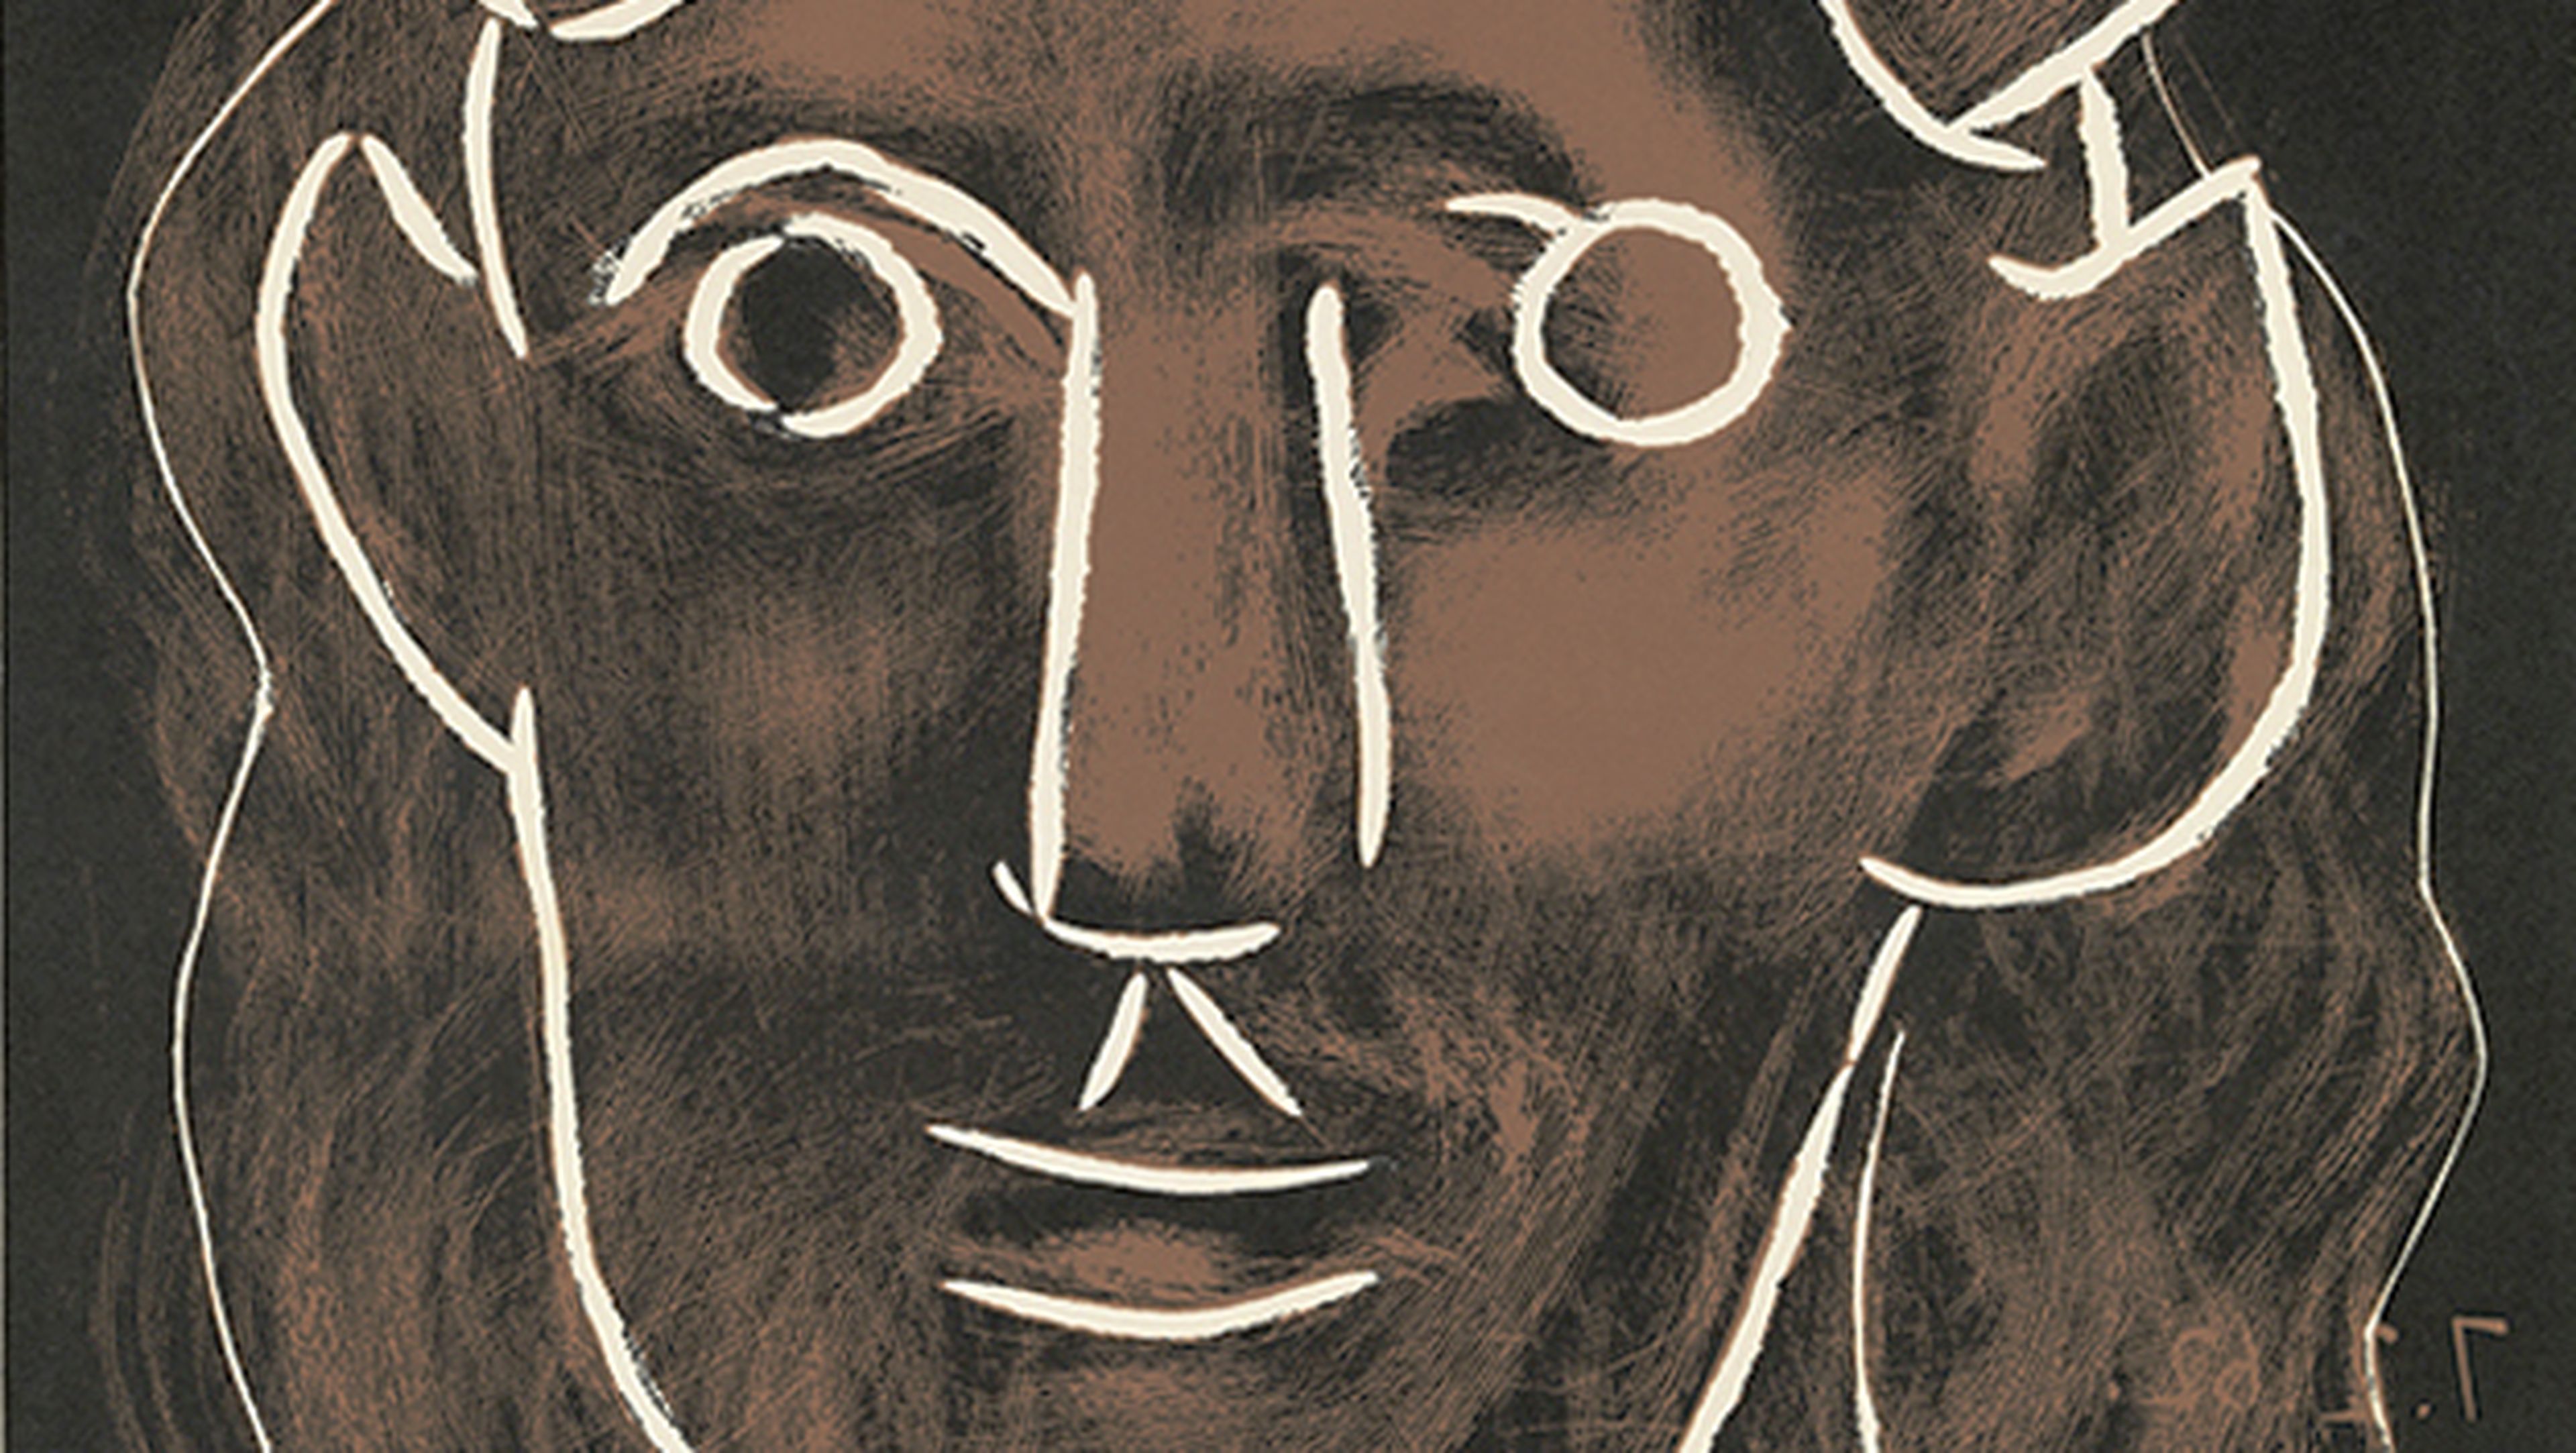 Cartas contra la Humanidad compra un Picasso para Ocho regalos sensatos por Jánuca